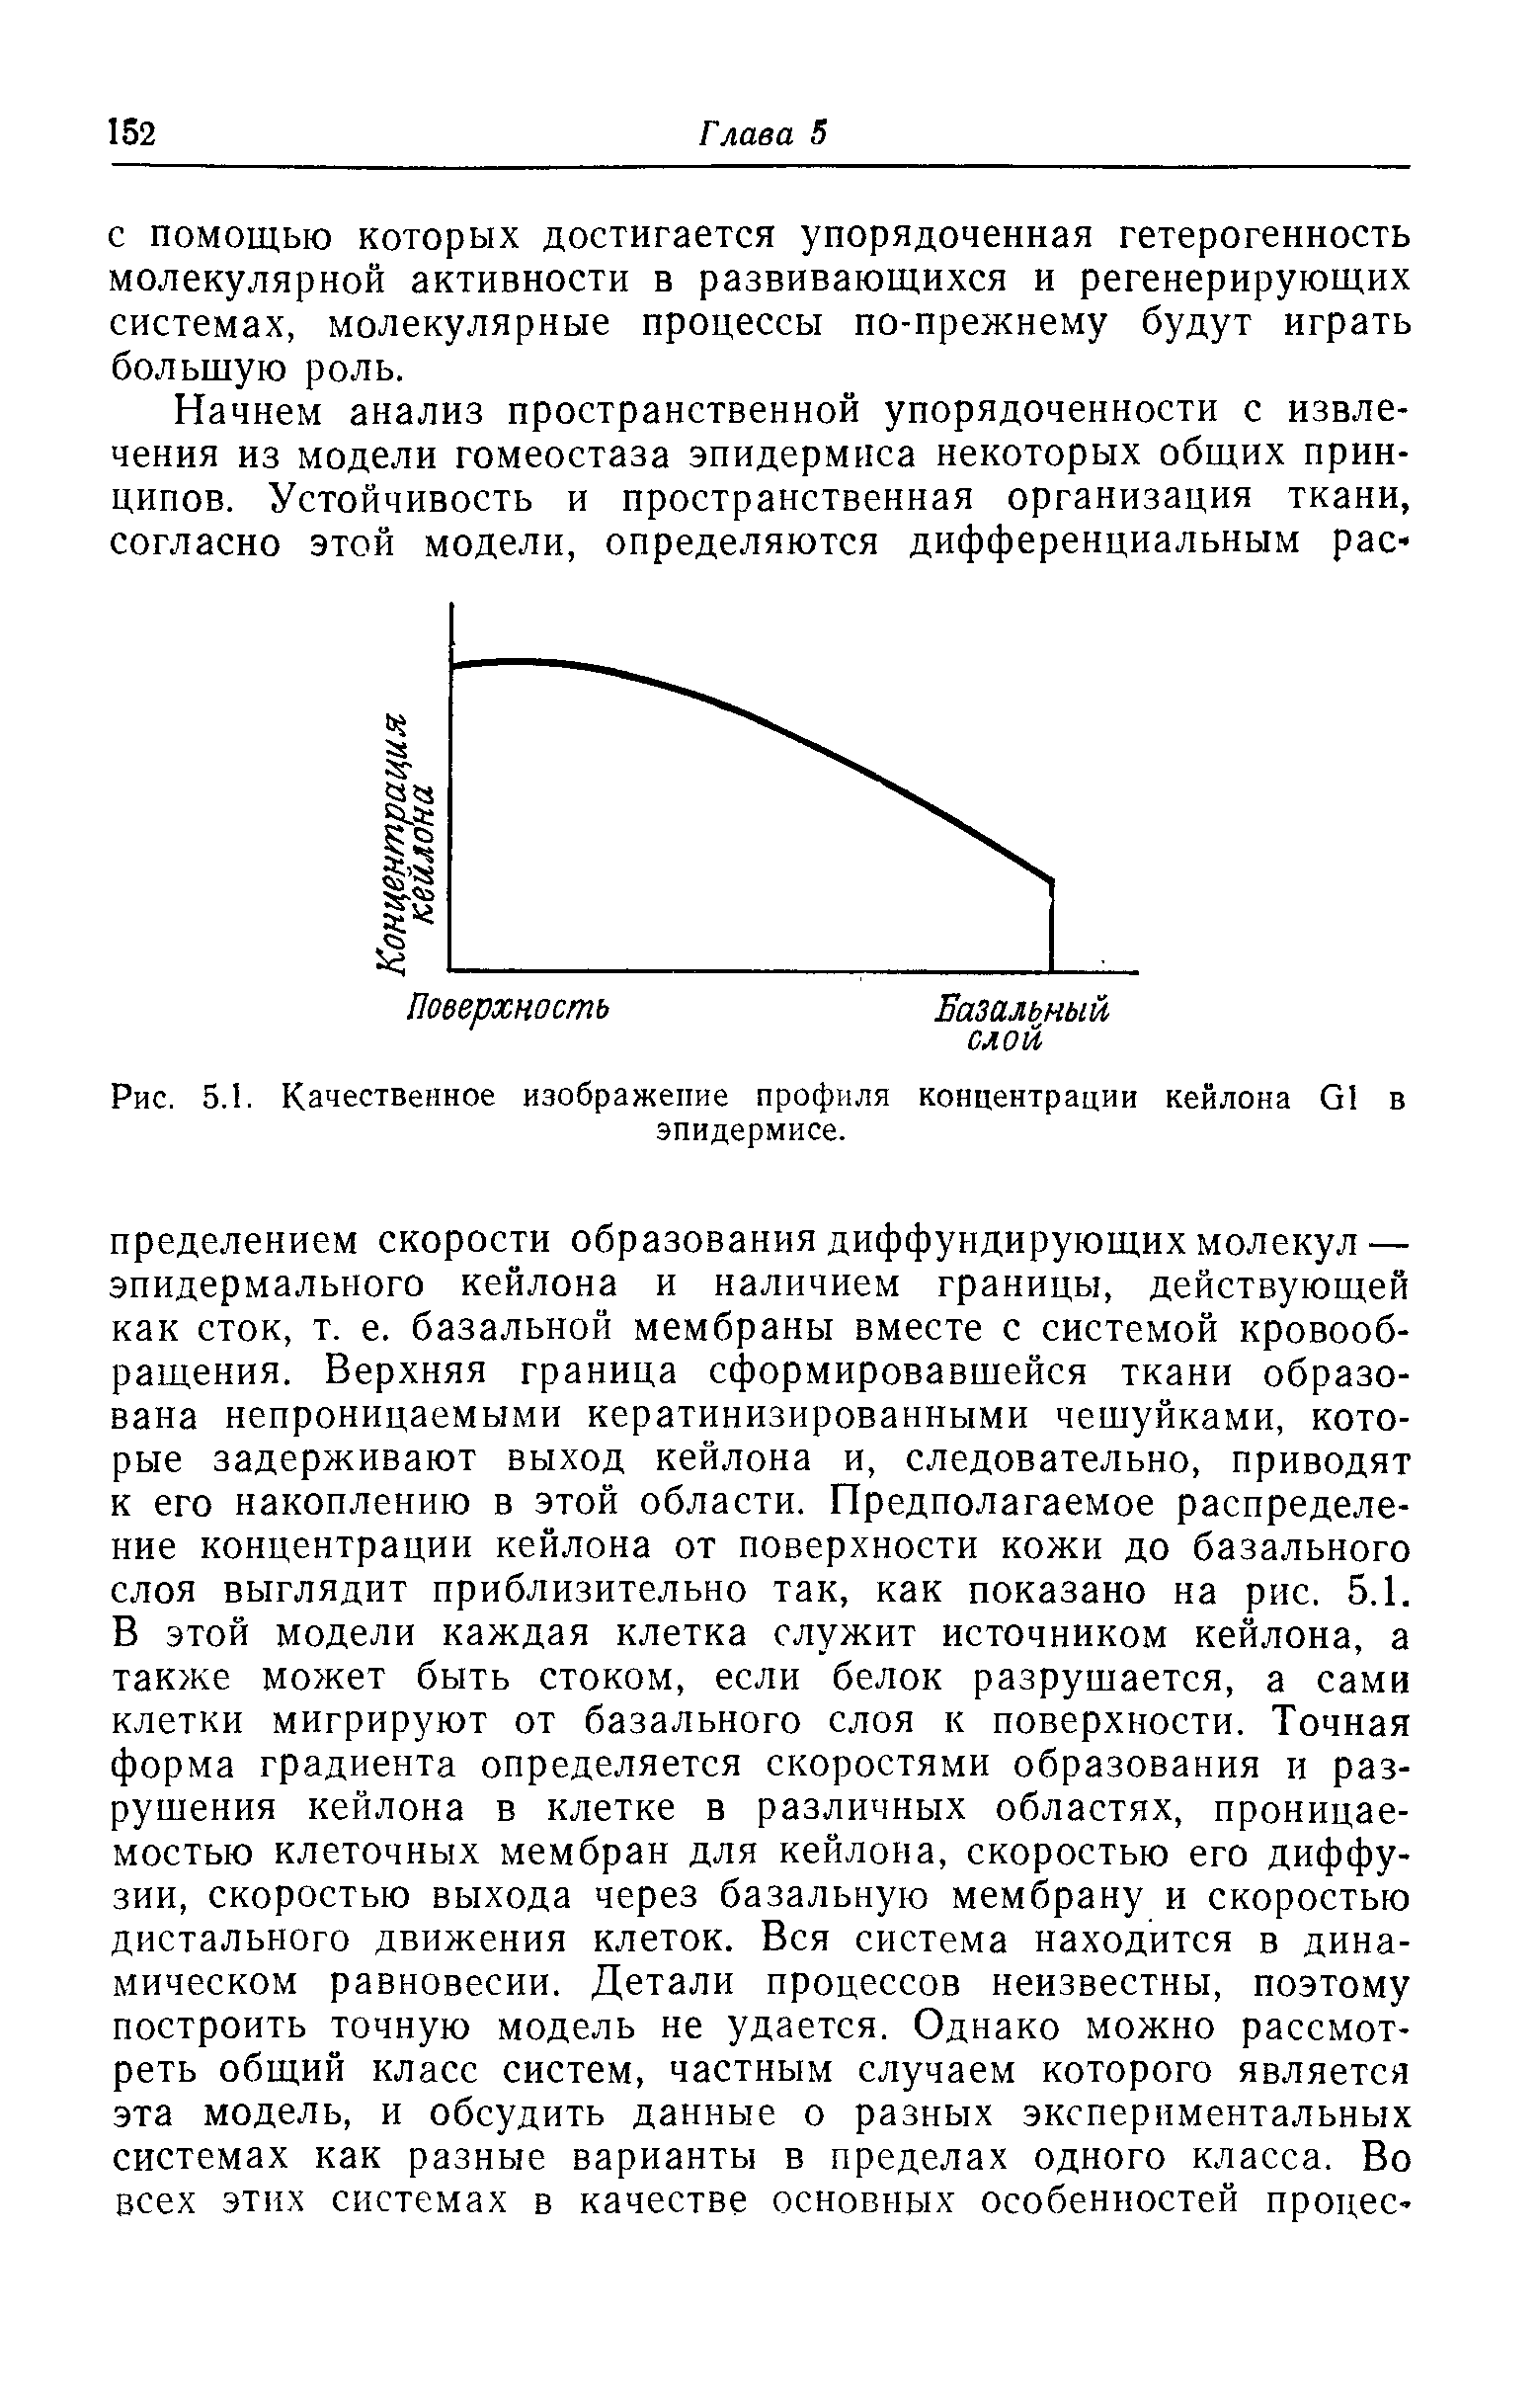 Рис. 5.1. Качественное изображение профиля концентрации кейлона й1 в эпидермисе.